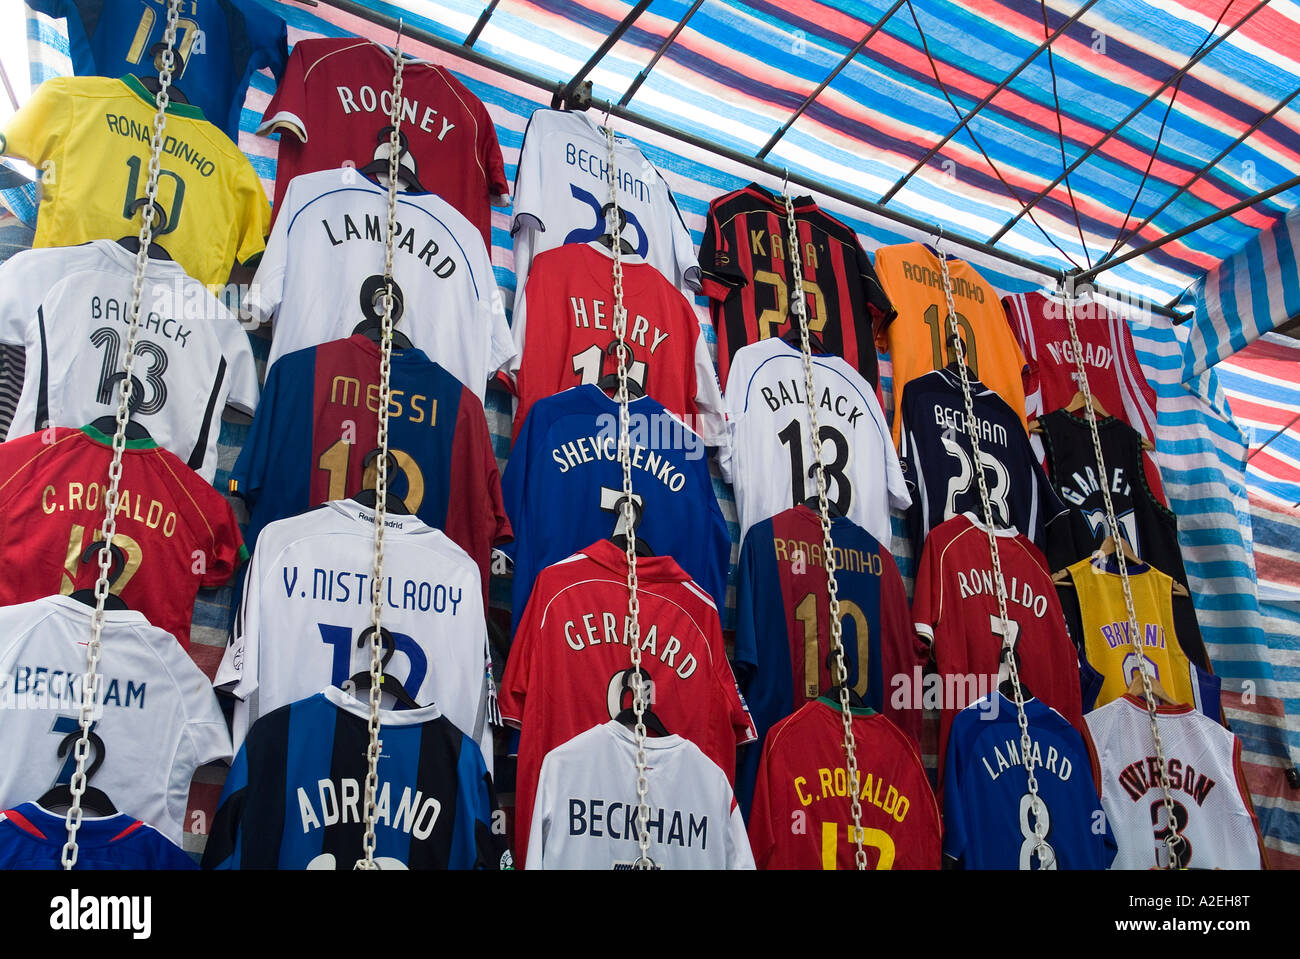 dh Tung choi MONG KOK HONG KONG marché chinois stalle kit de rayures de football mongkok faux vêtements chemises contrefaçons biens contrefaits chine asie Banque D'Images